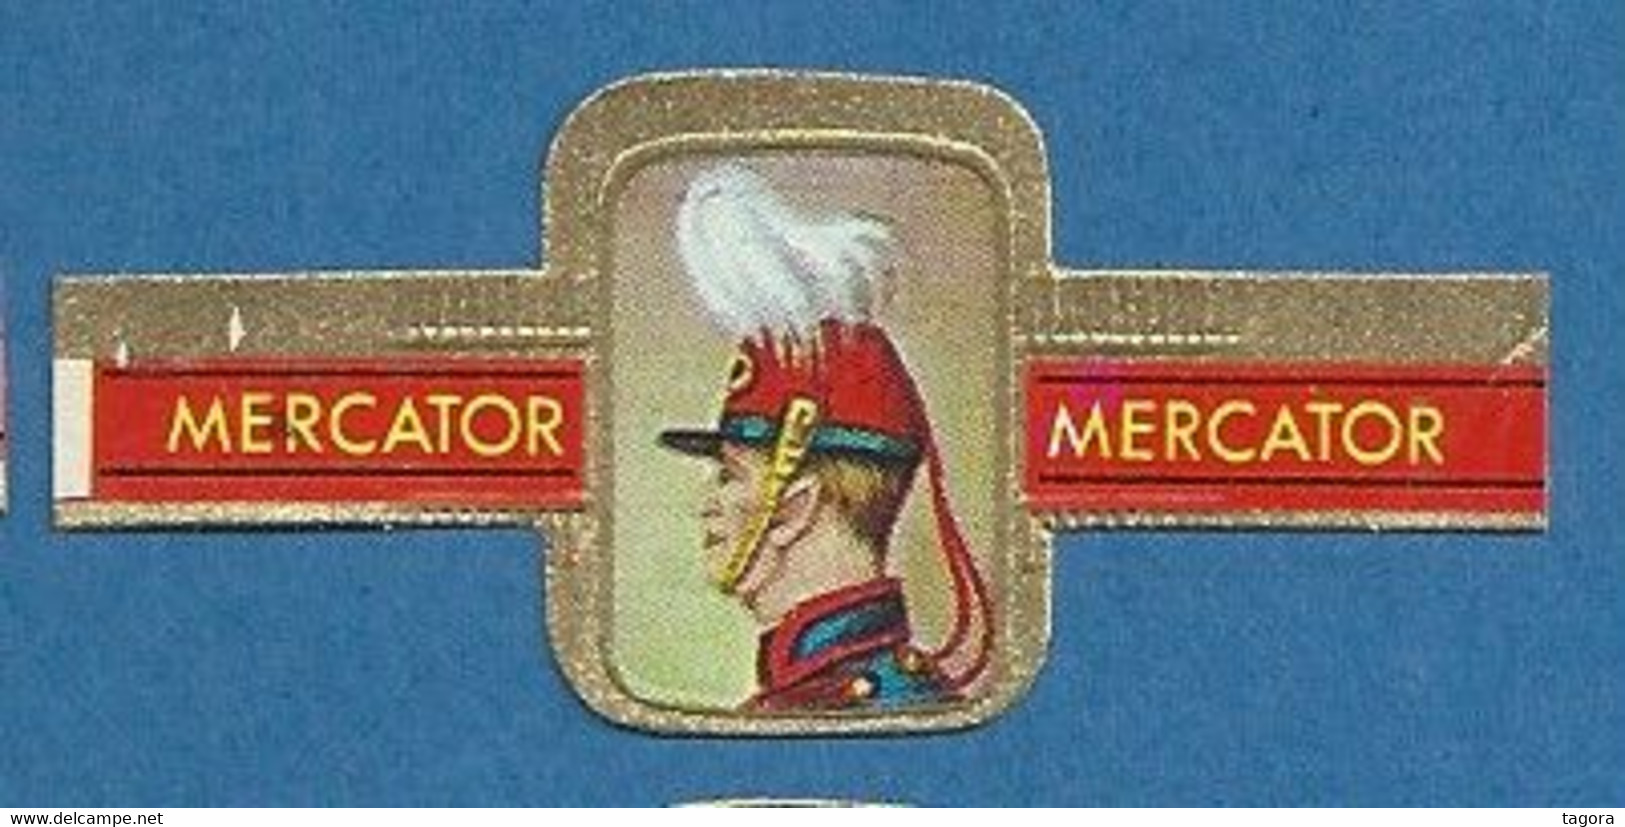 24 Bagues De Cigares Mercator, Série I Couvre-chefs Militaires, Thème Militaire Soldat Uniforme Coiffure - Anelli Da Sigari